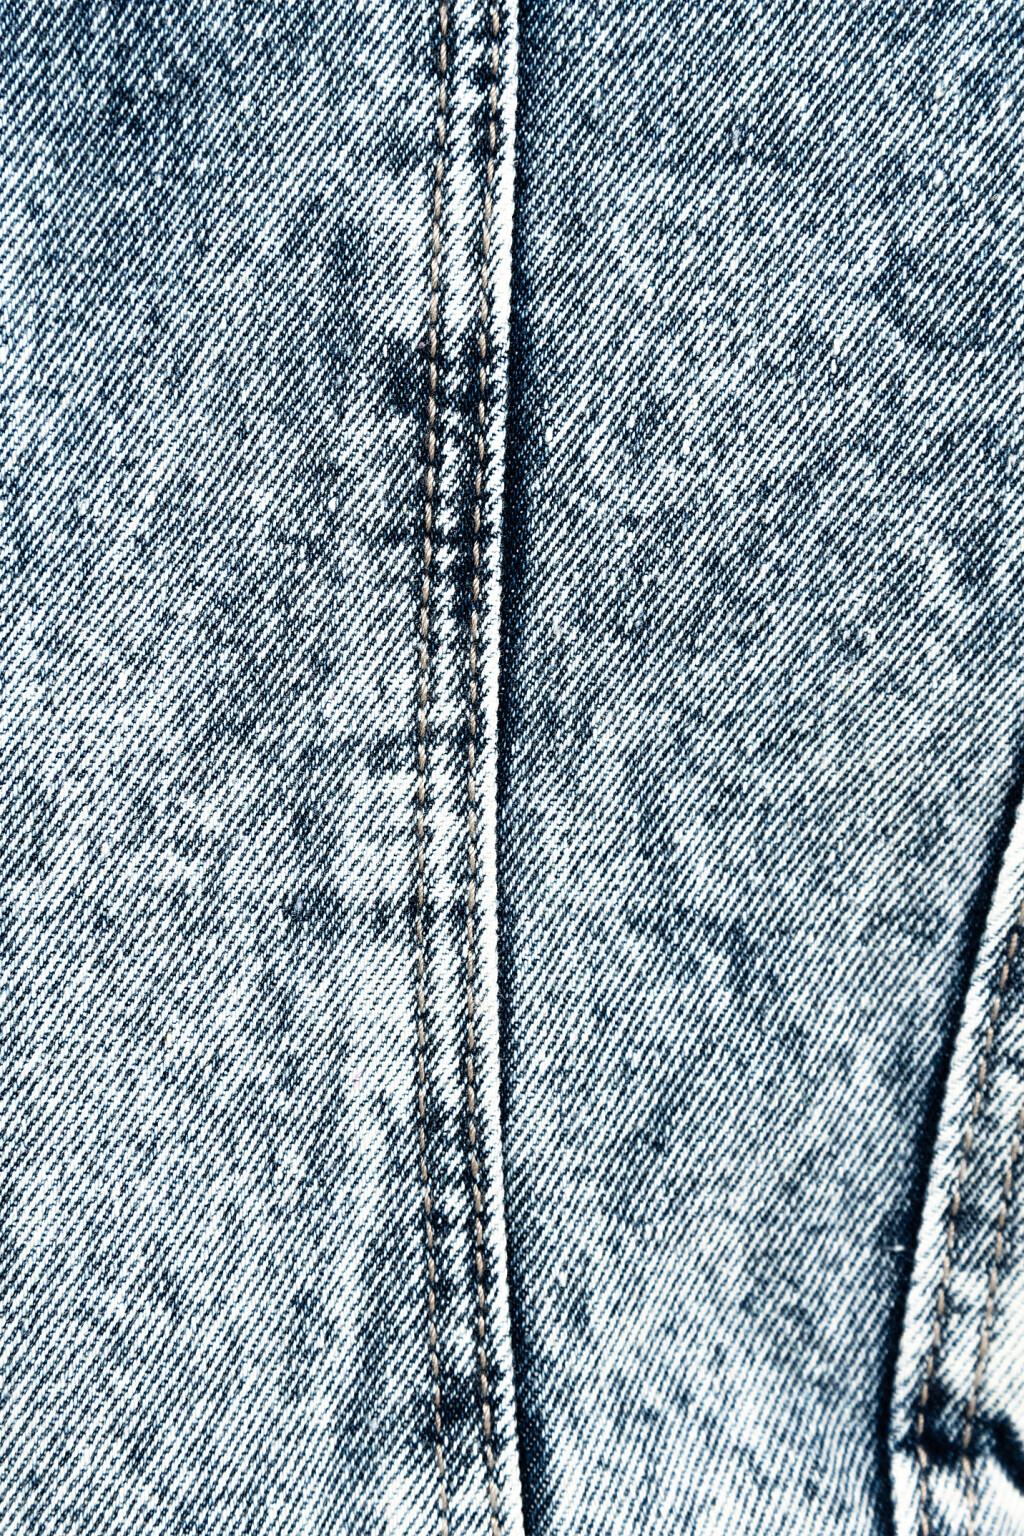 куртка джинсовая женская